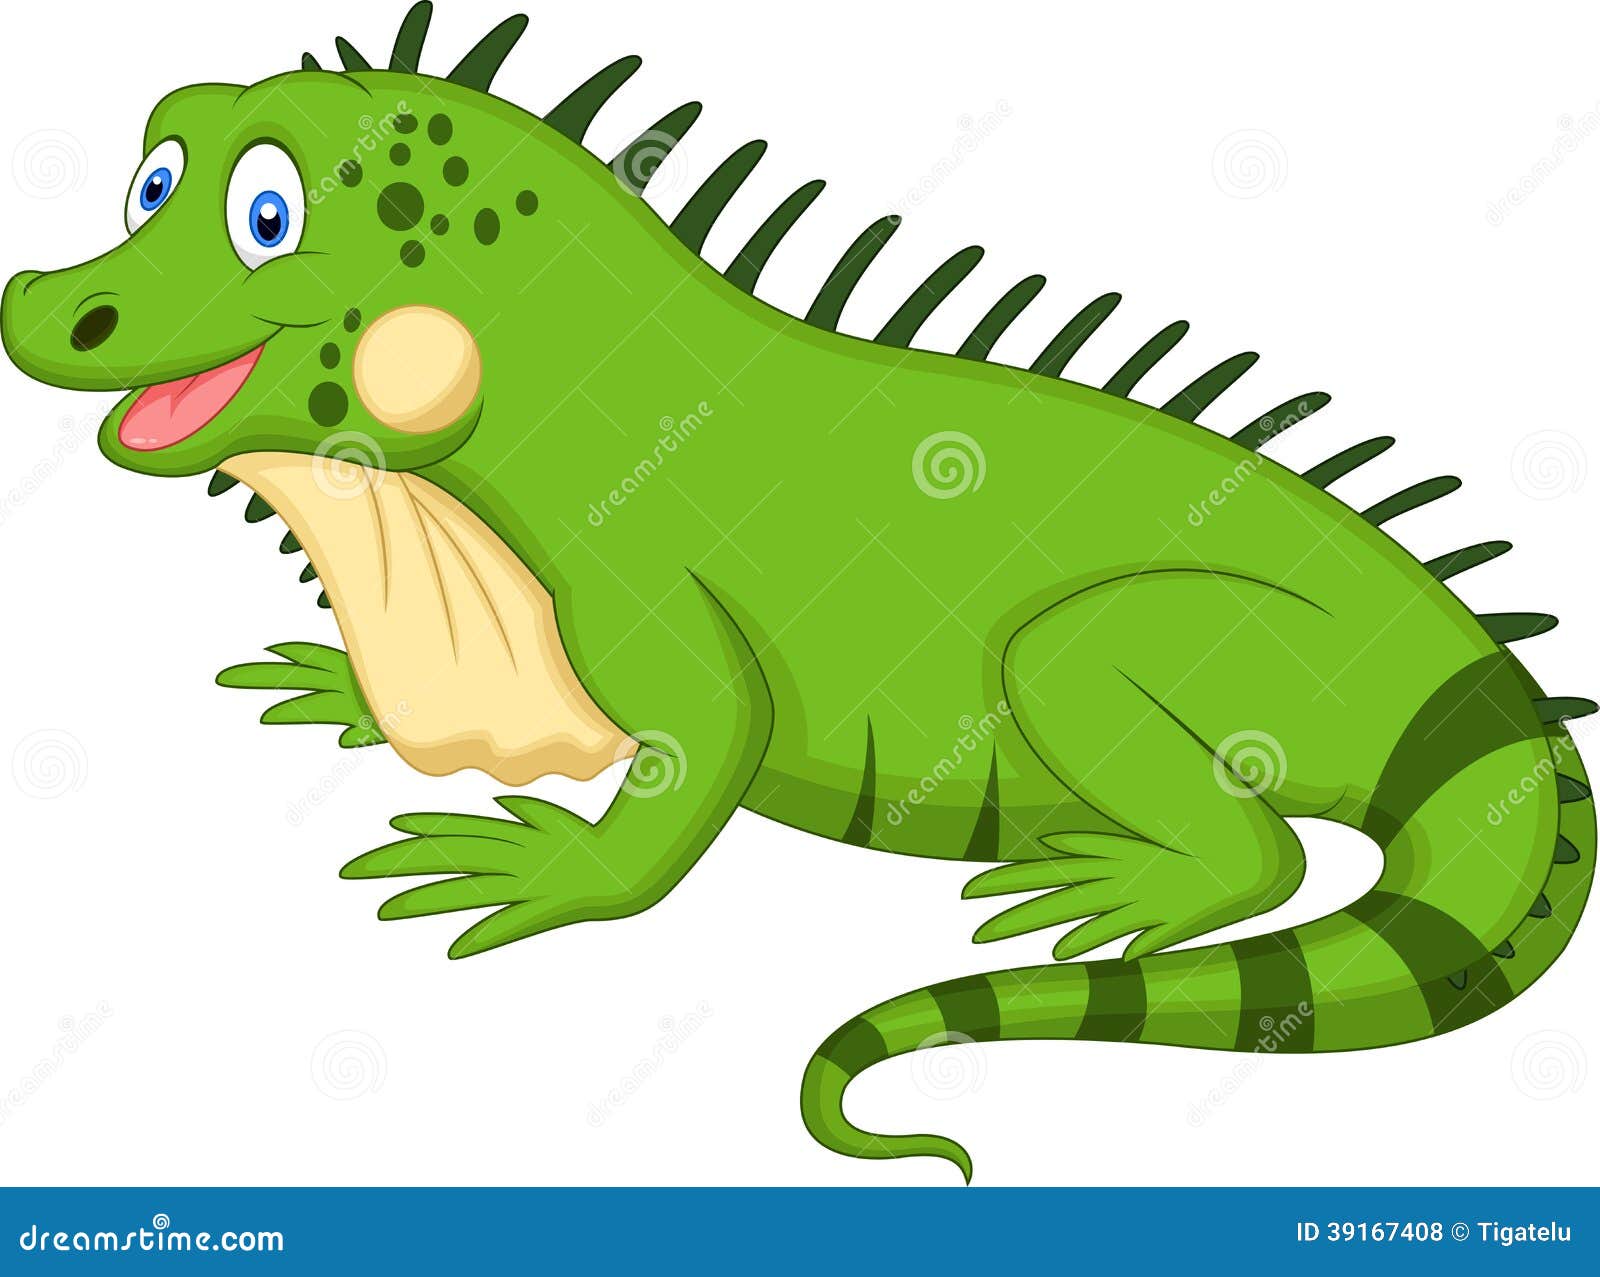 animated iguana clipart - photo #33